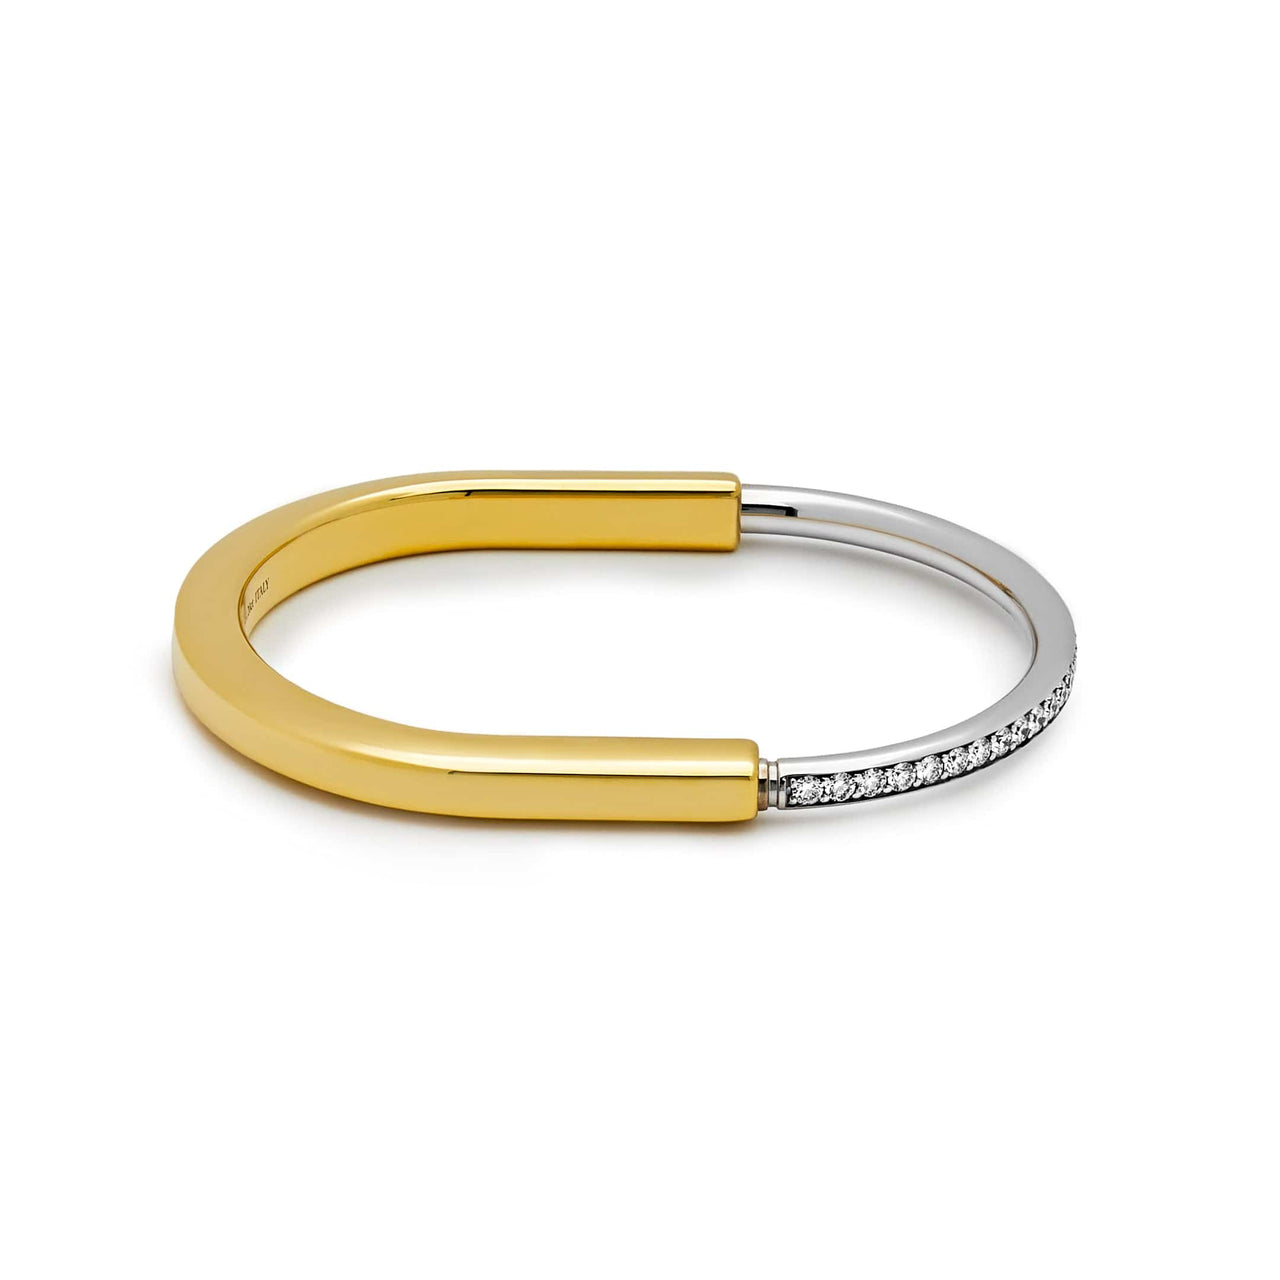 Tiffany & Co. Lock Bangle in Yellow and White Gold with Half Pave Diamonds Wrist Aficionado